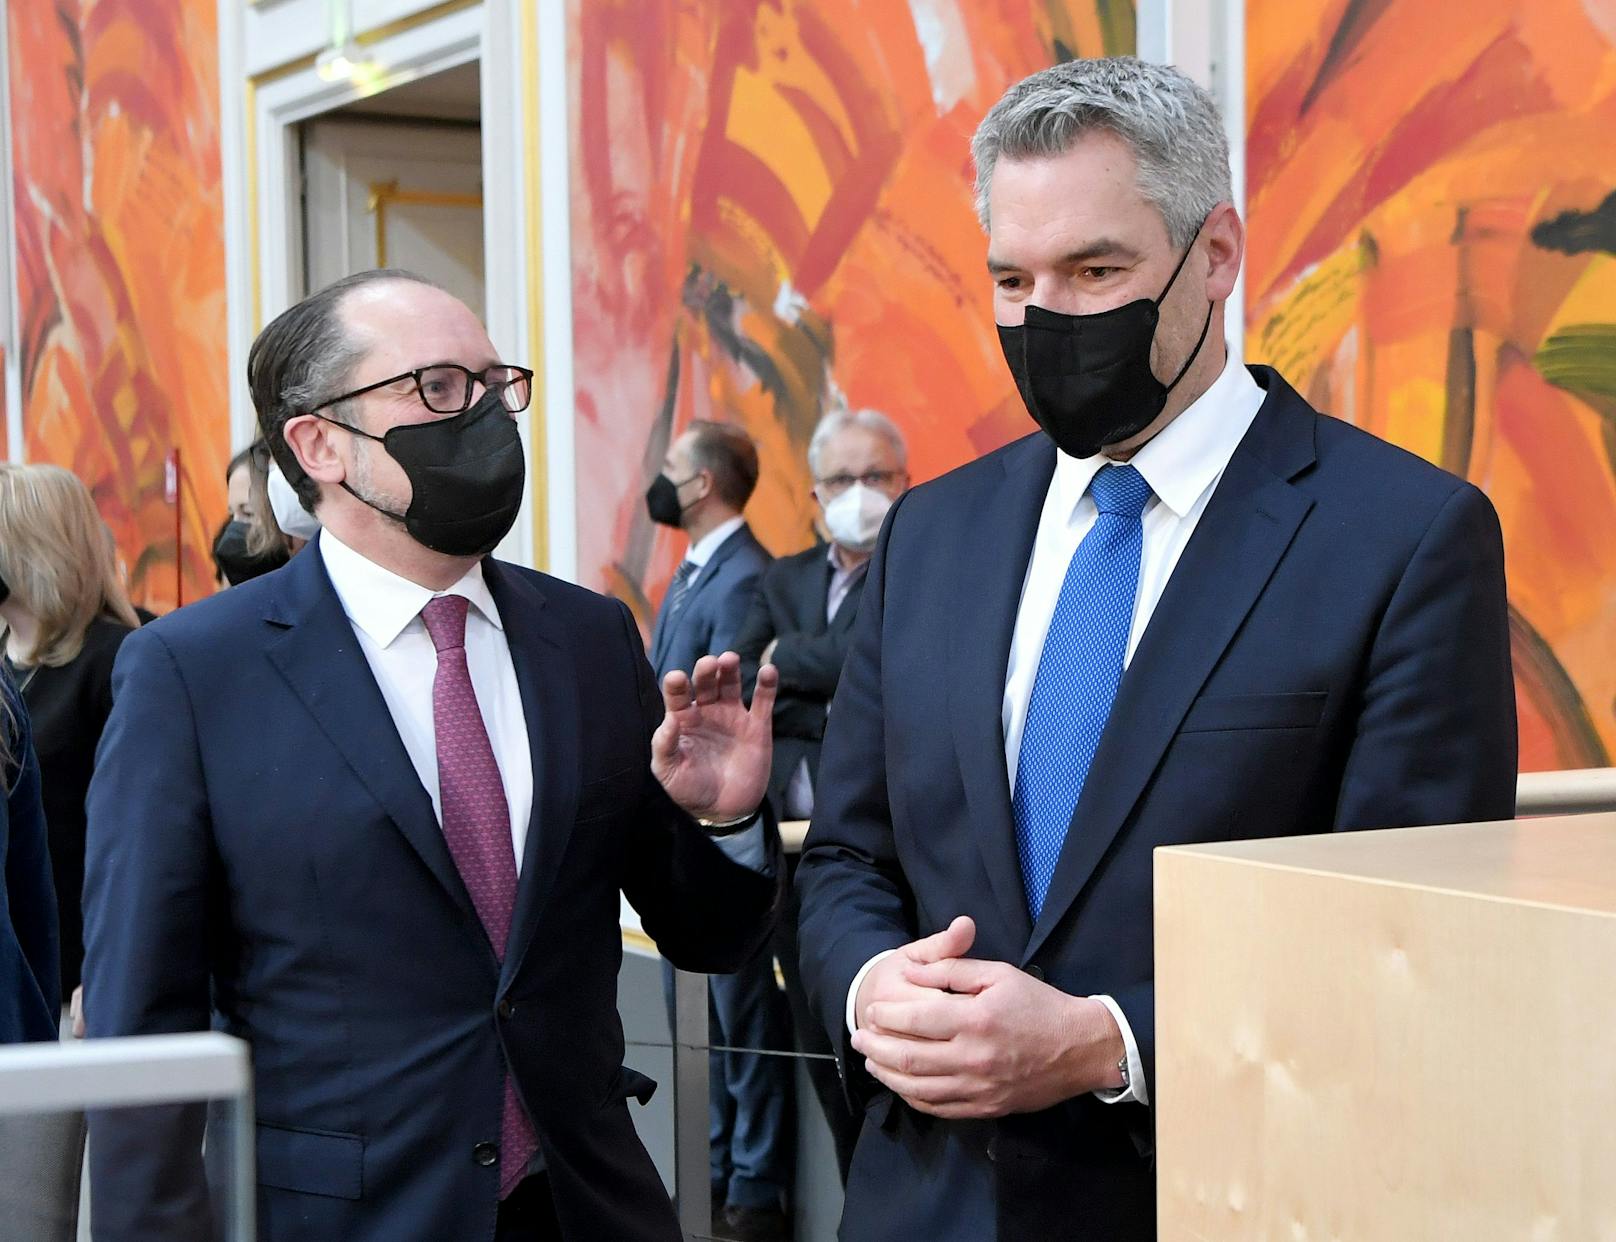 Außenminister Alexander Schallenberg (ÖVP) und Bundeskanzler Karl Nehammer (ÖVP) – konnten sie den ÖVP-Absturz bremsen?